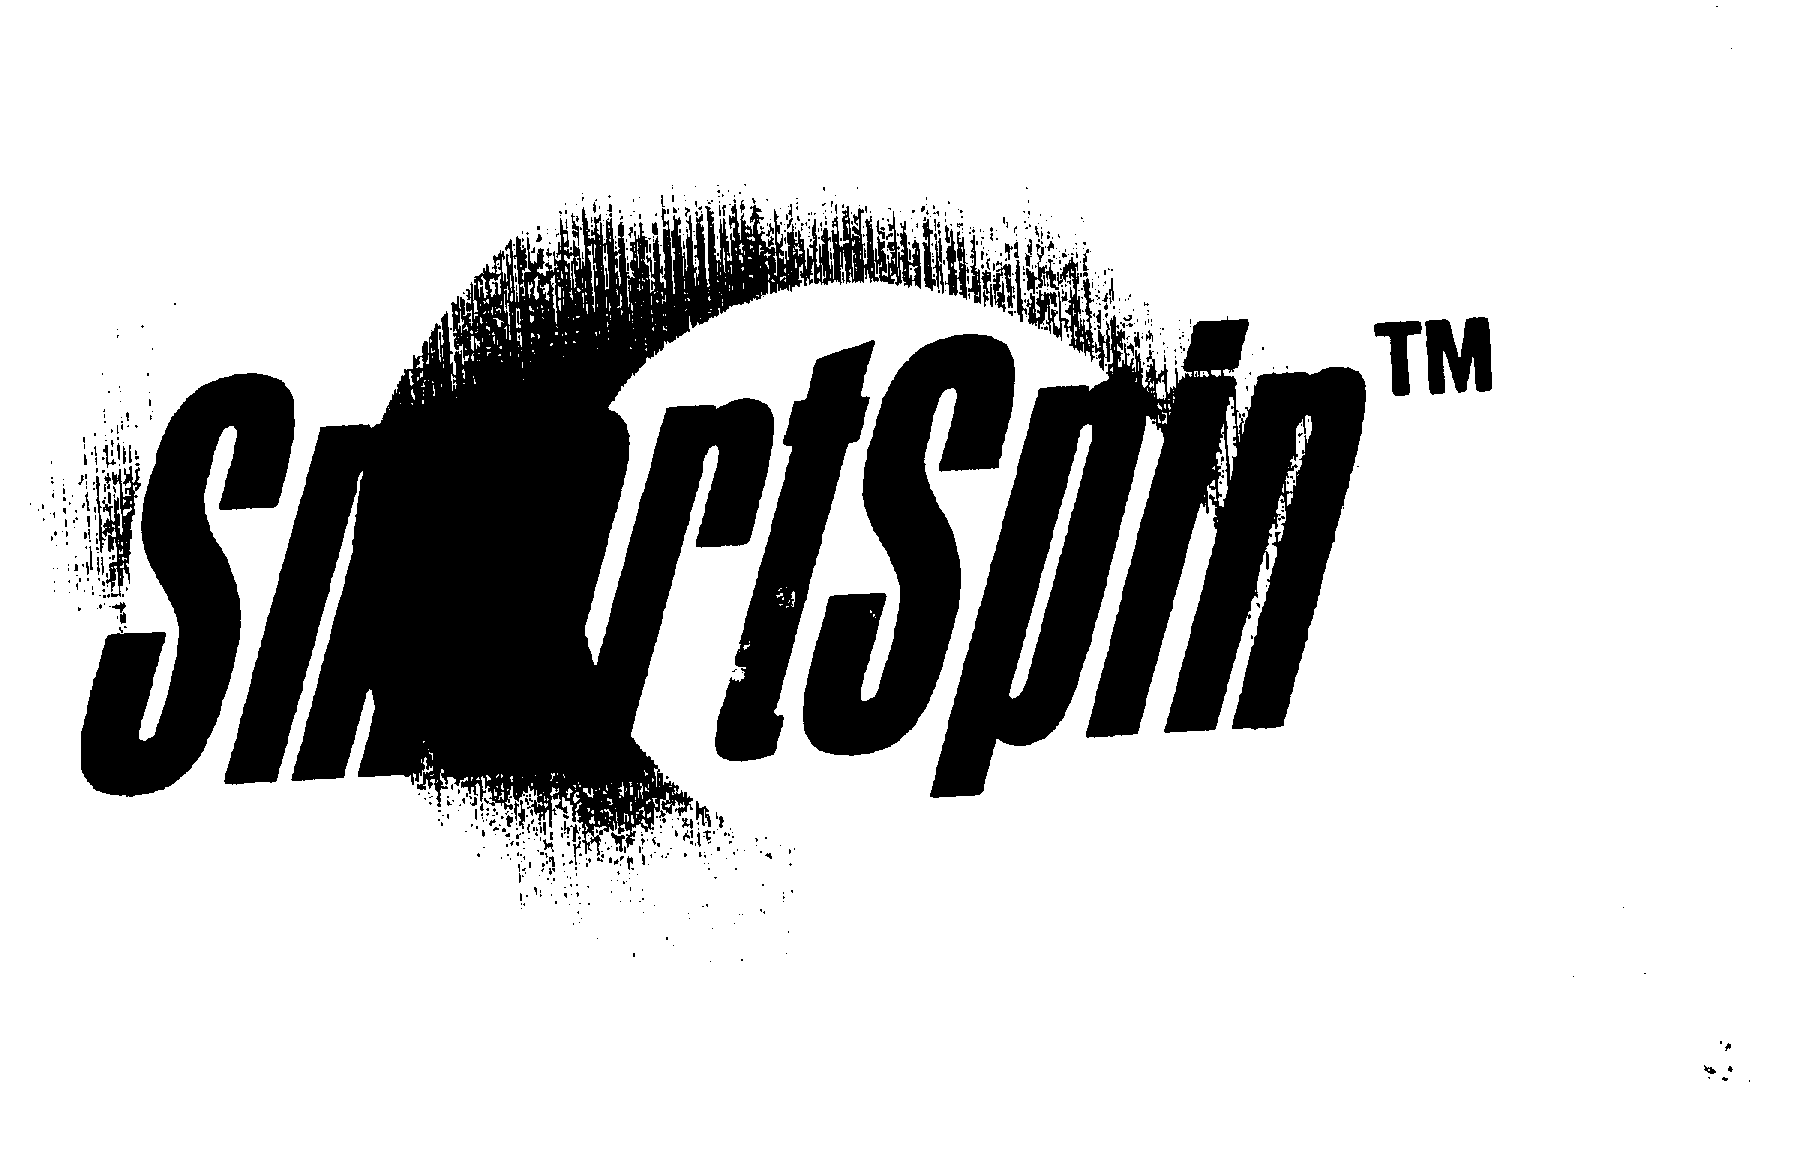 Trademark Logo SMARTSPIN